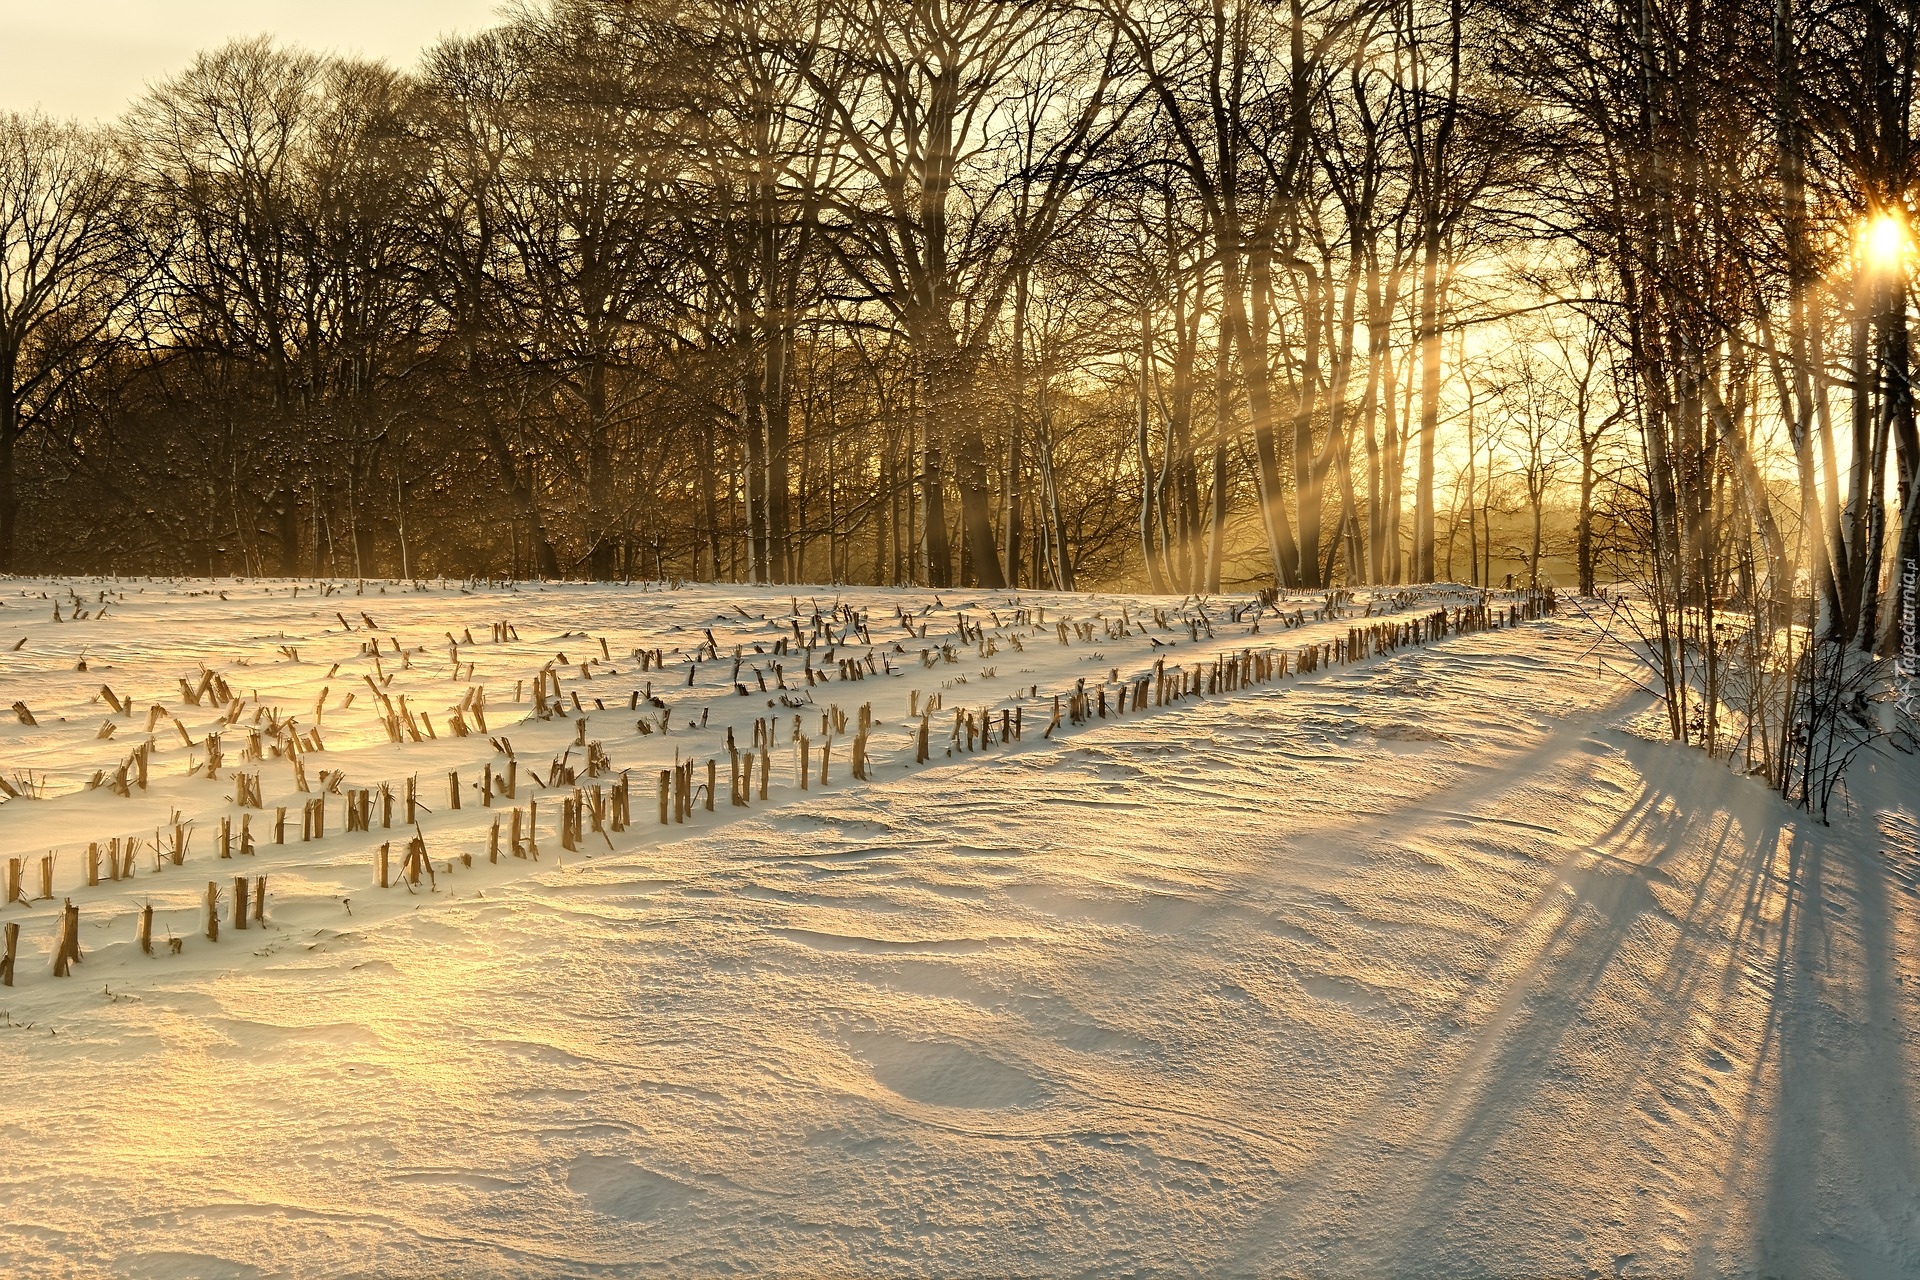 Zima, Śnieg, Pole, Drzewa, Prrzebijające światło